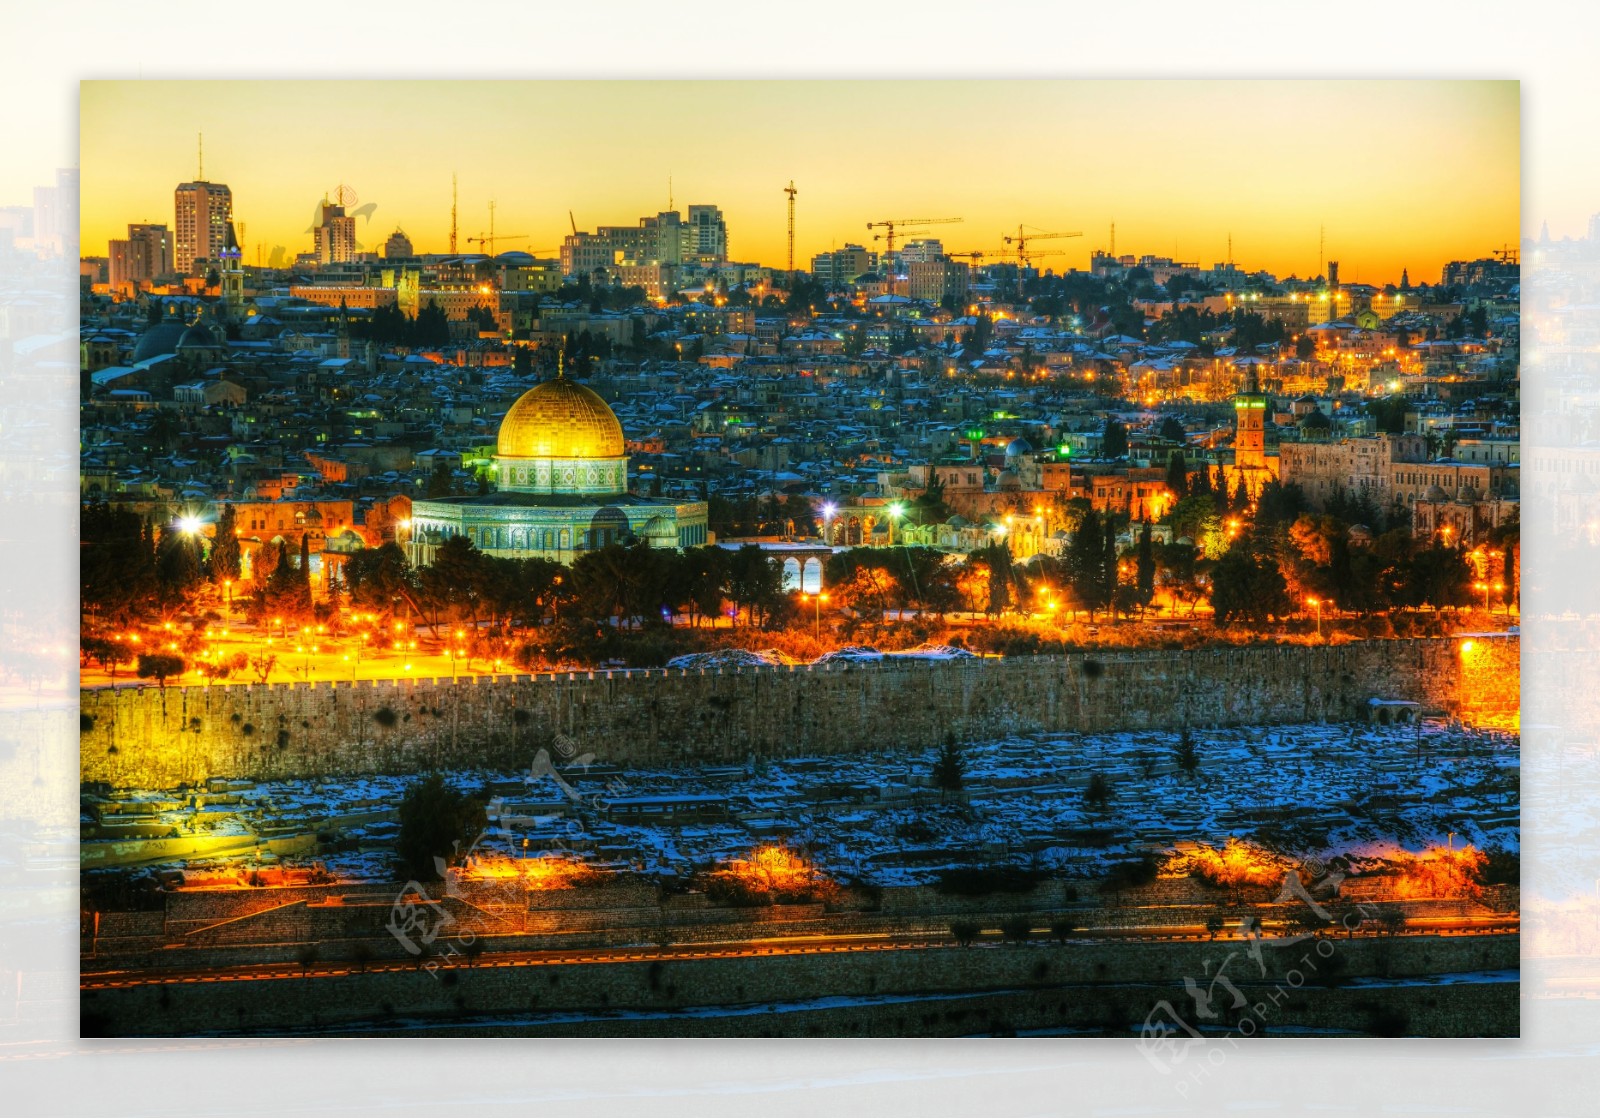 美丽夜景的耶路撒冷